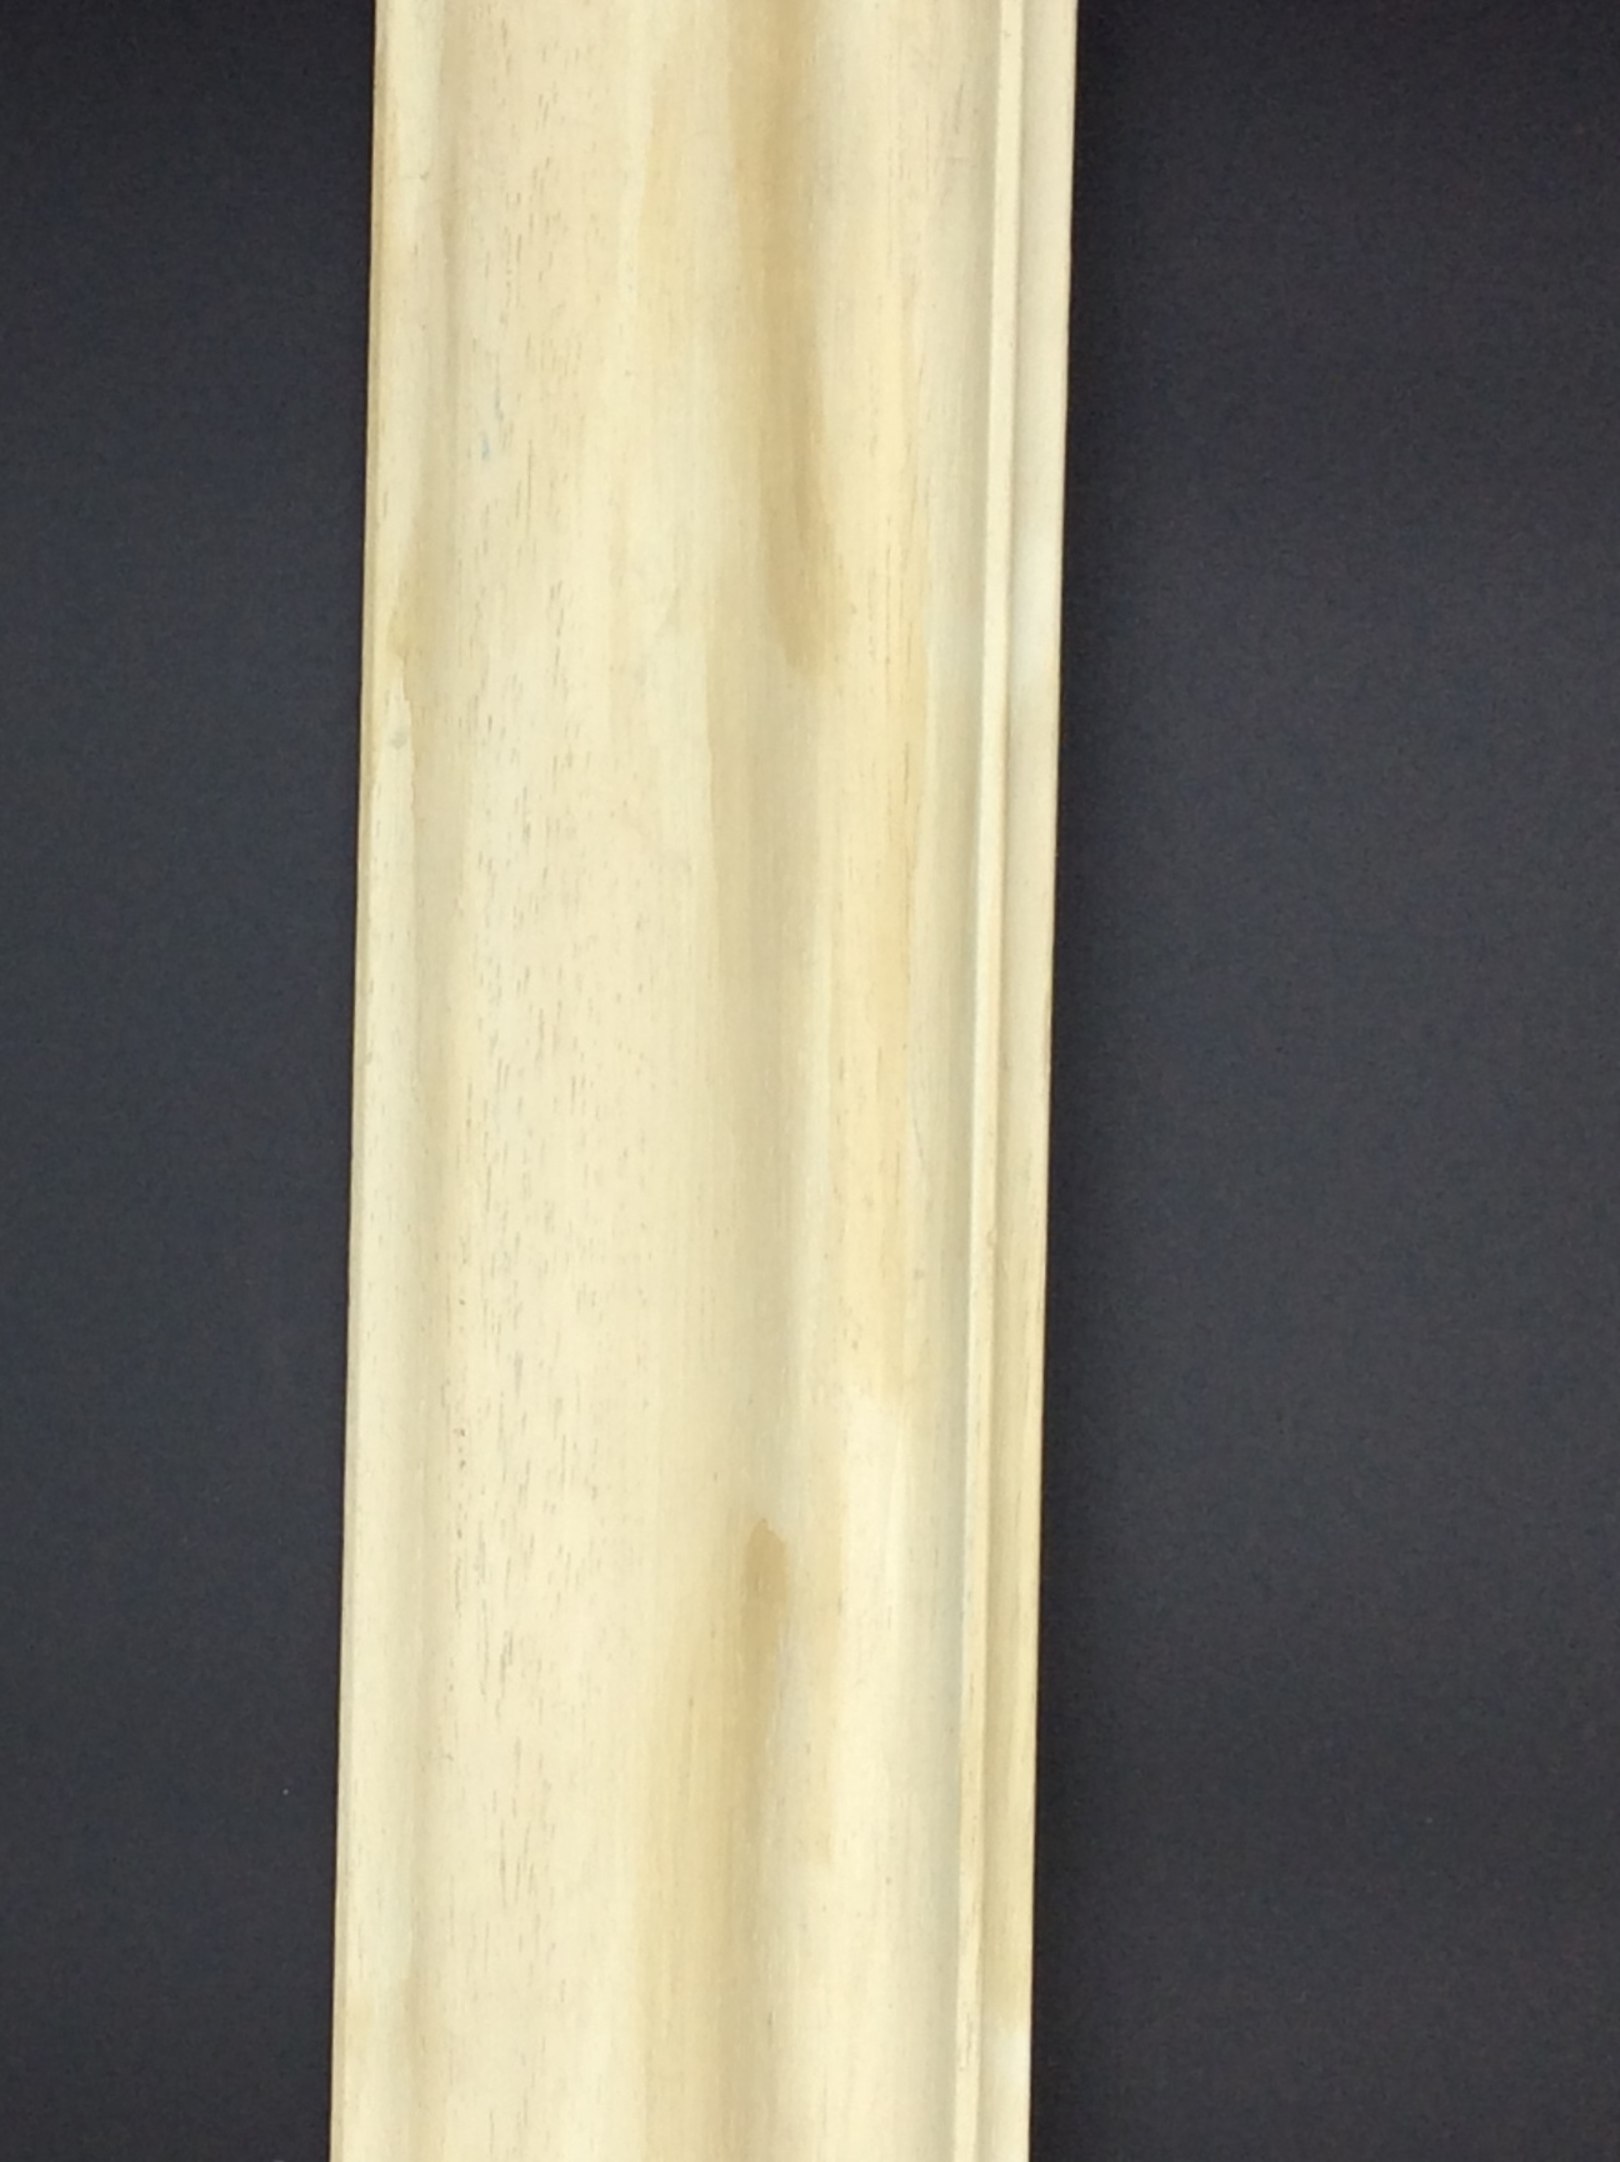 Cornice legno naturale 60x90